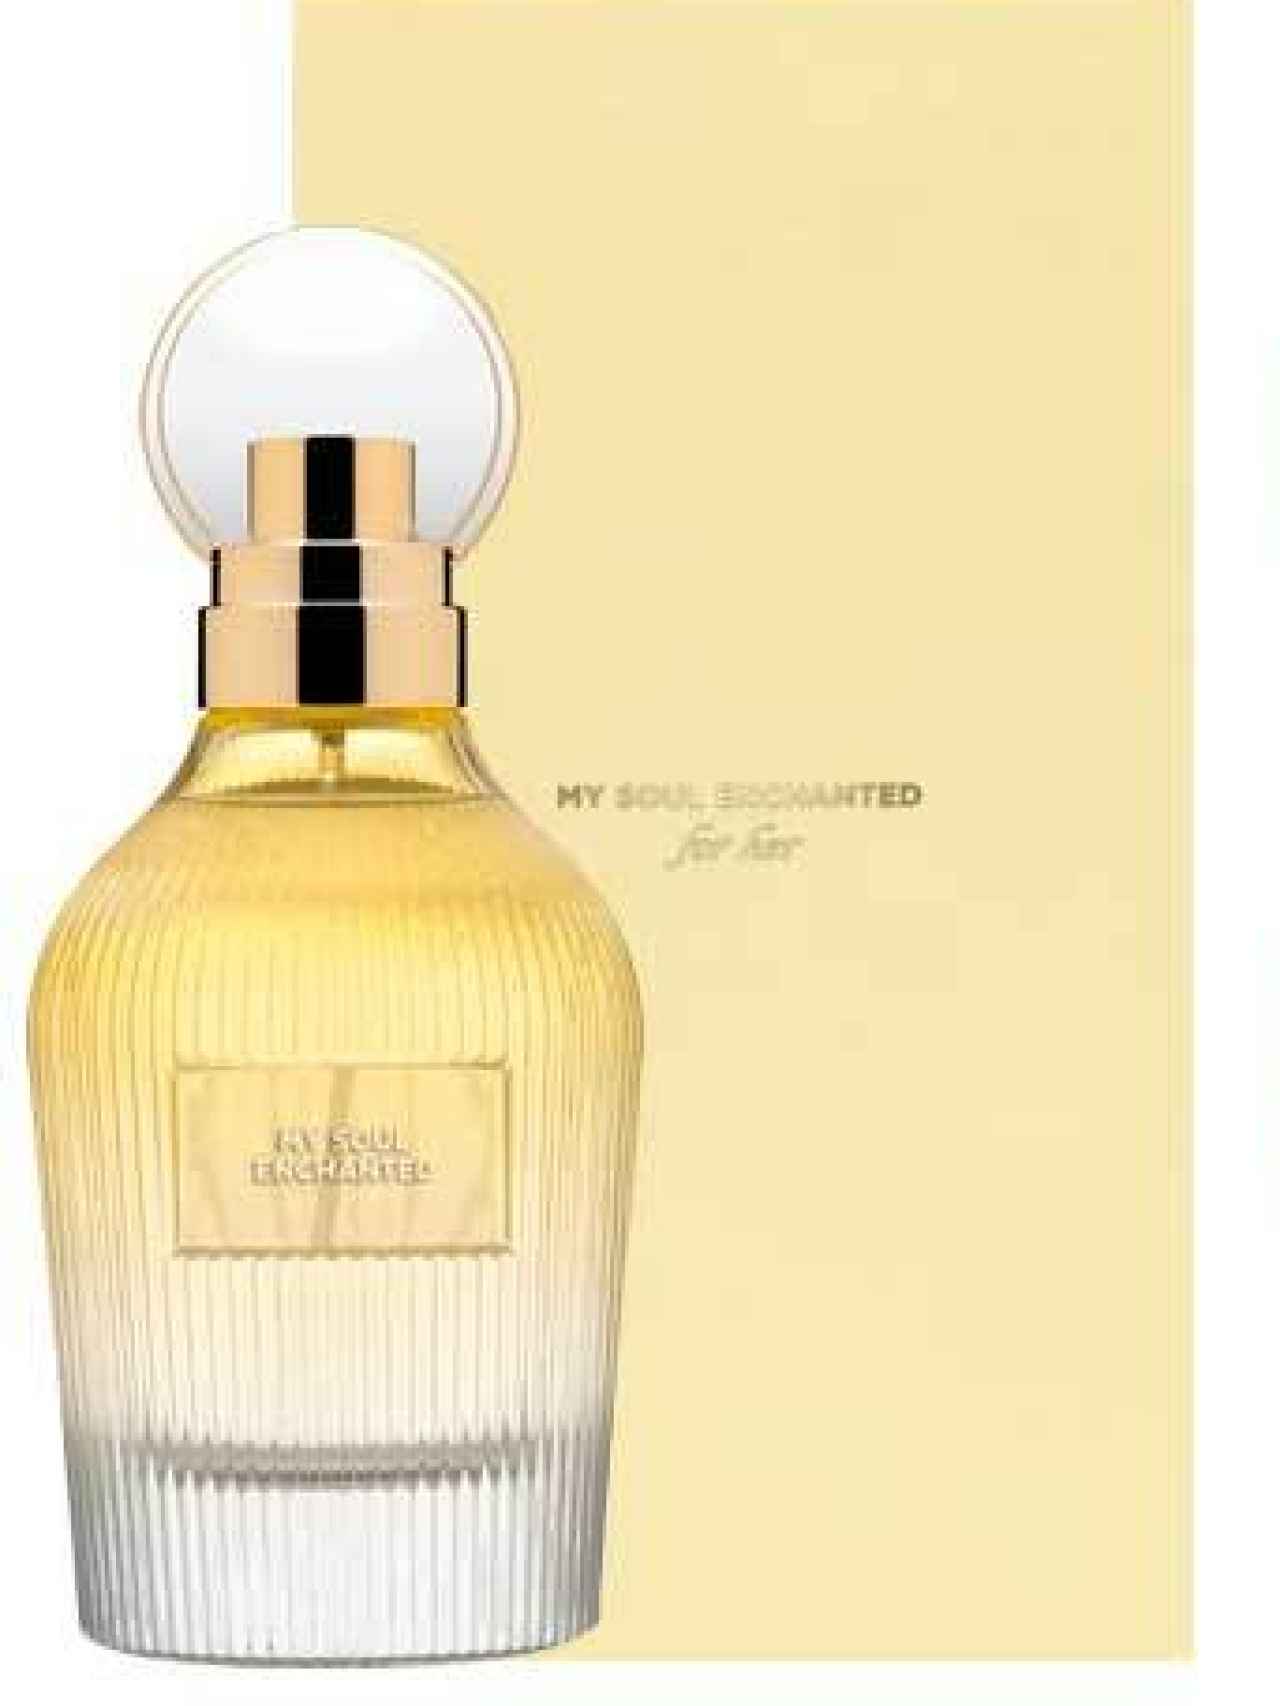 Mercadona ha encontrado el 'clon' casi perfecto de uno de los perfumes de lujo más buscados.